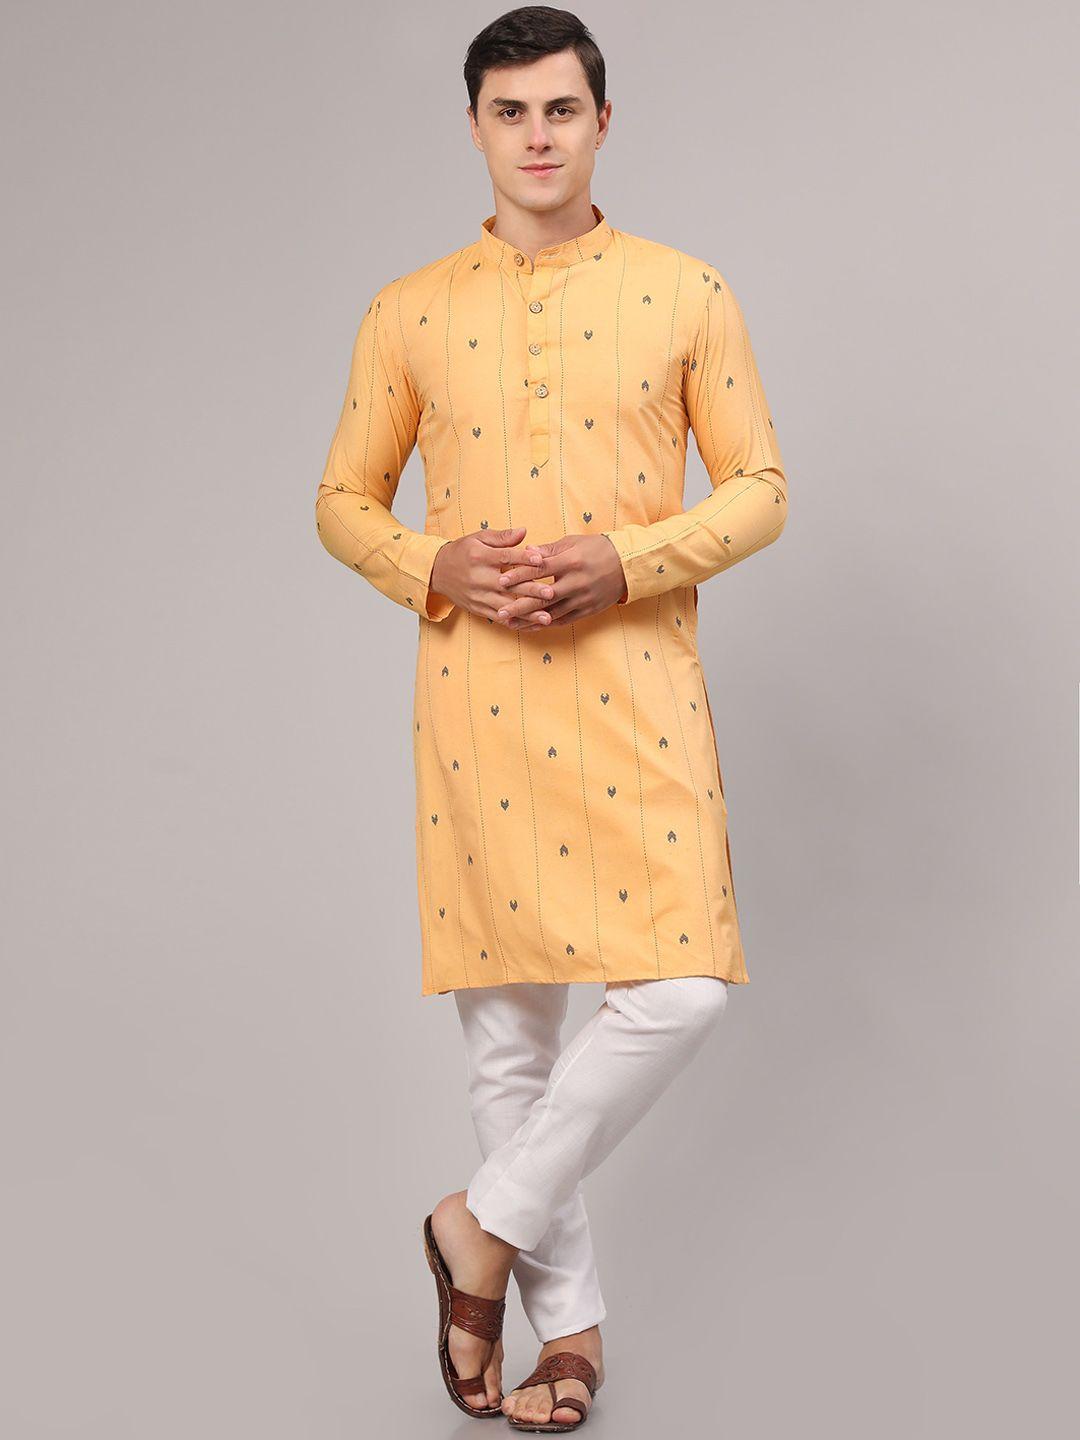 nimidiya ethnic woven design regular pure cotton kurta with pyjamas